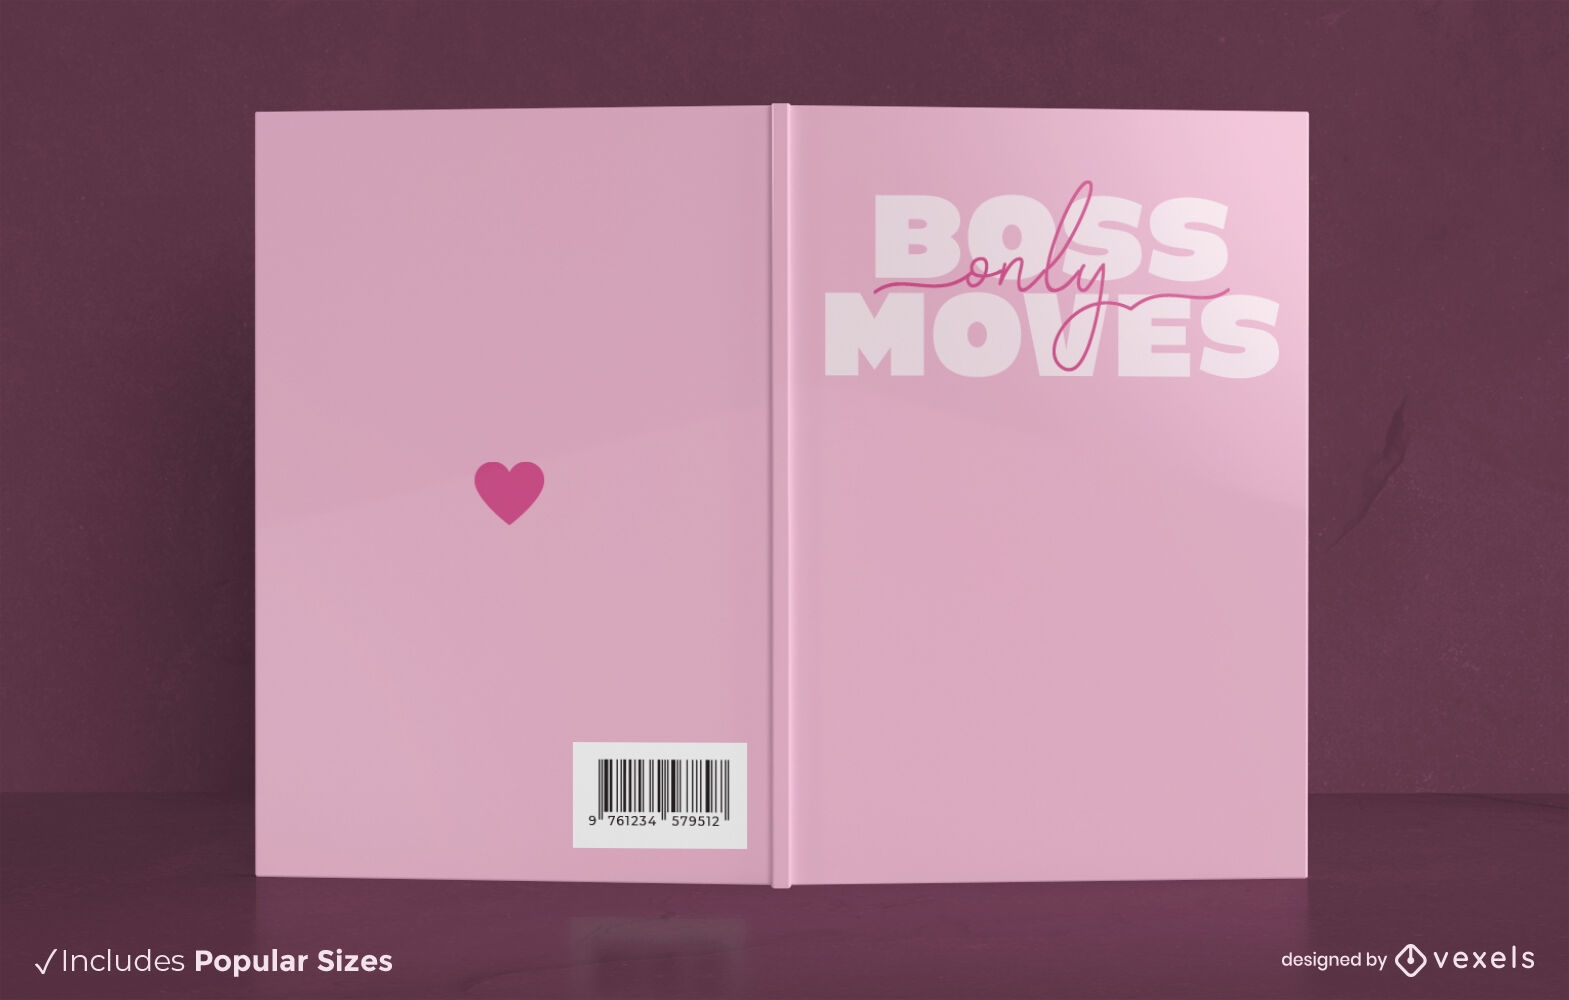 Boss solo mueve el diseño de la portada del libro.